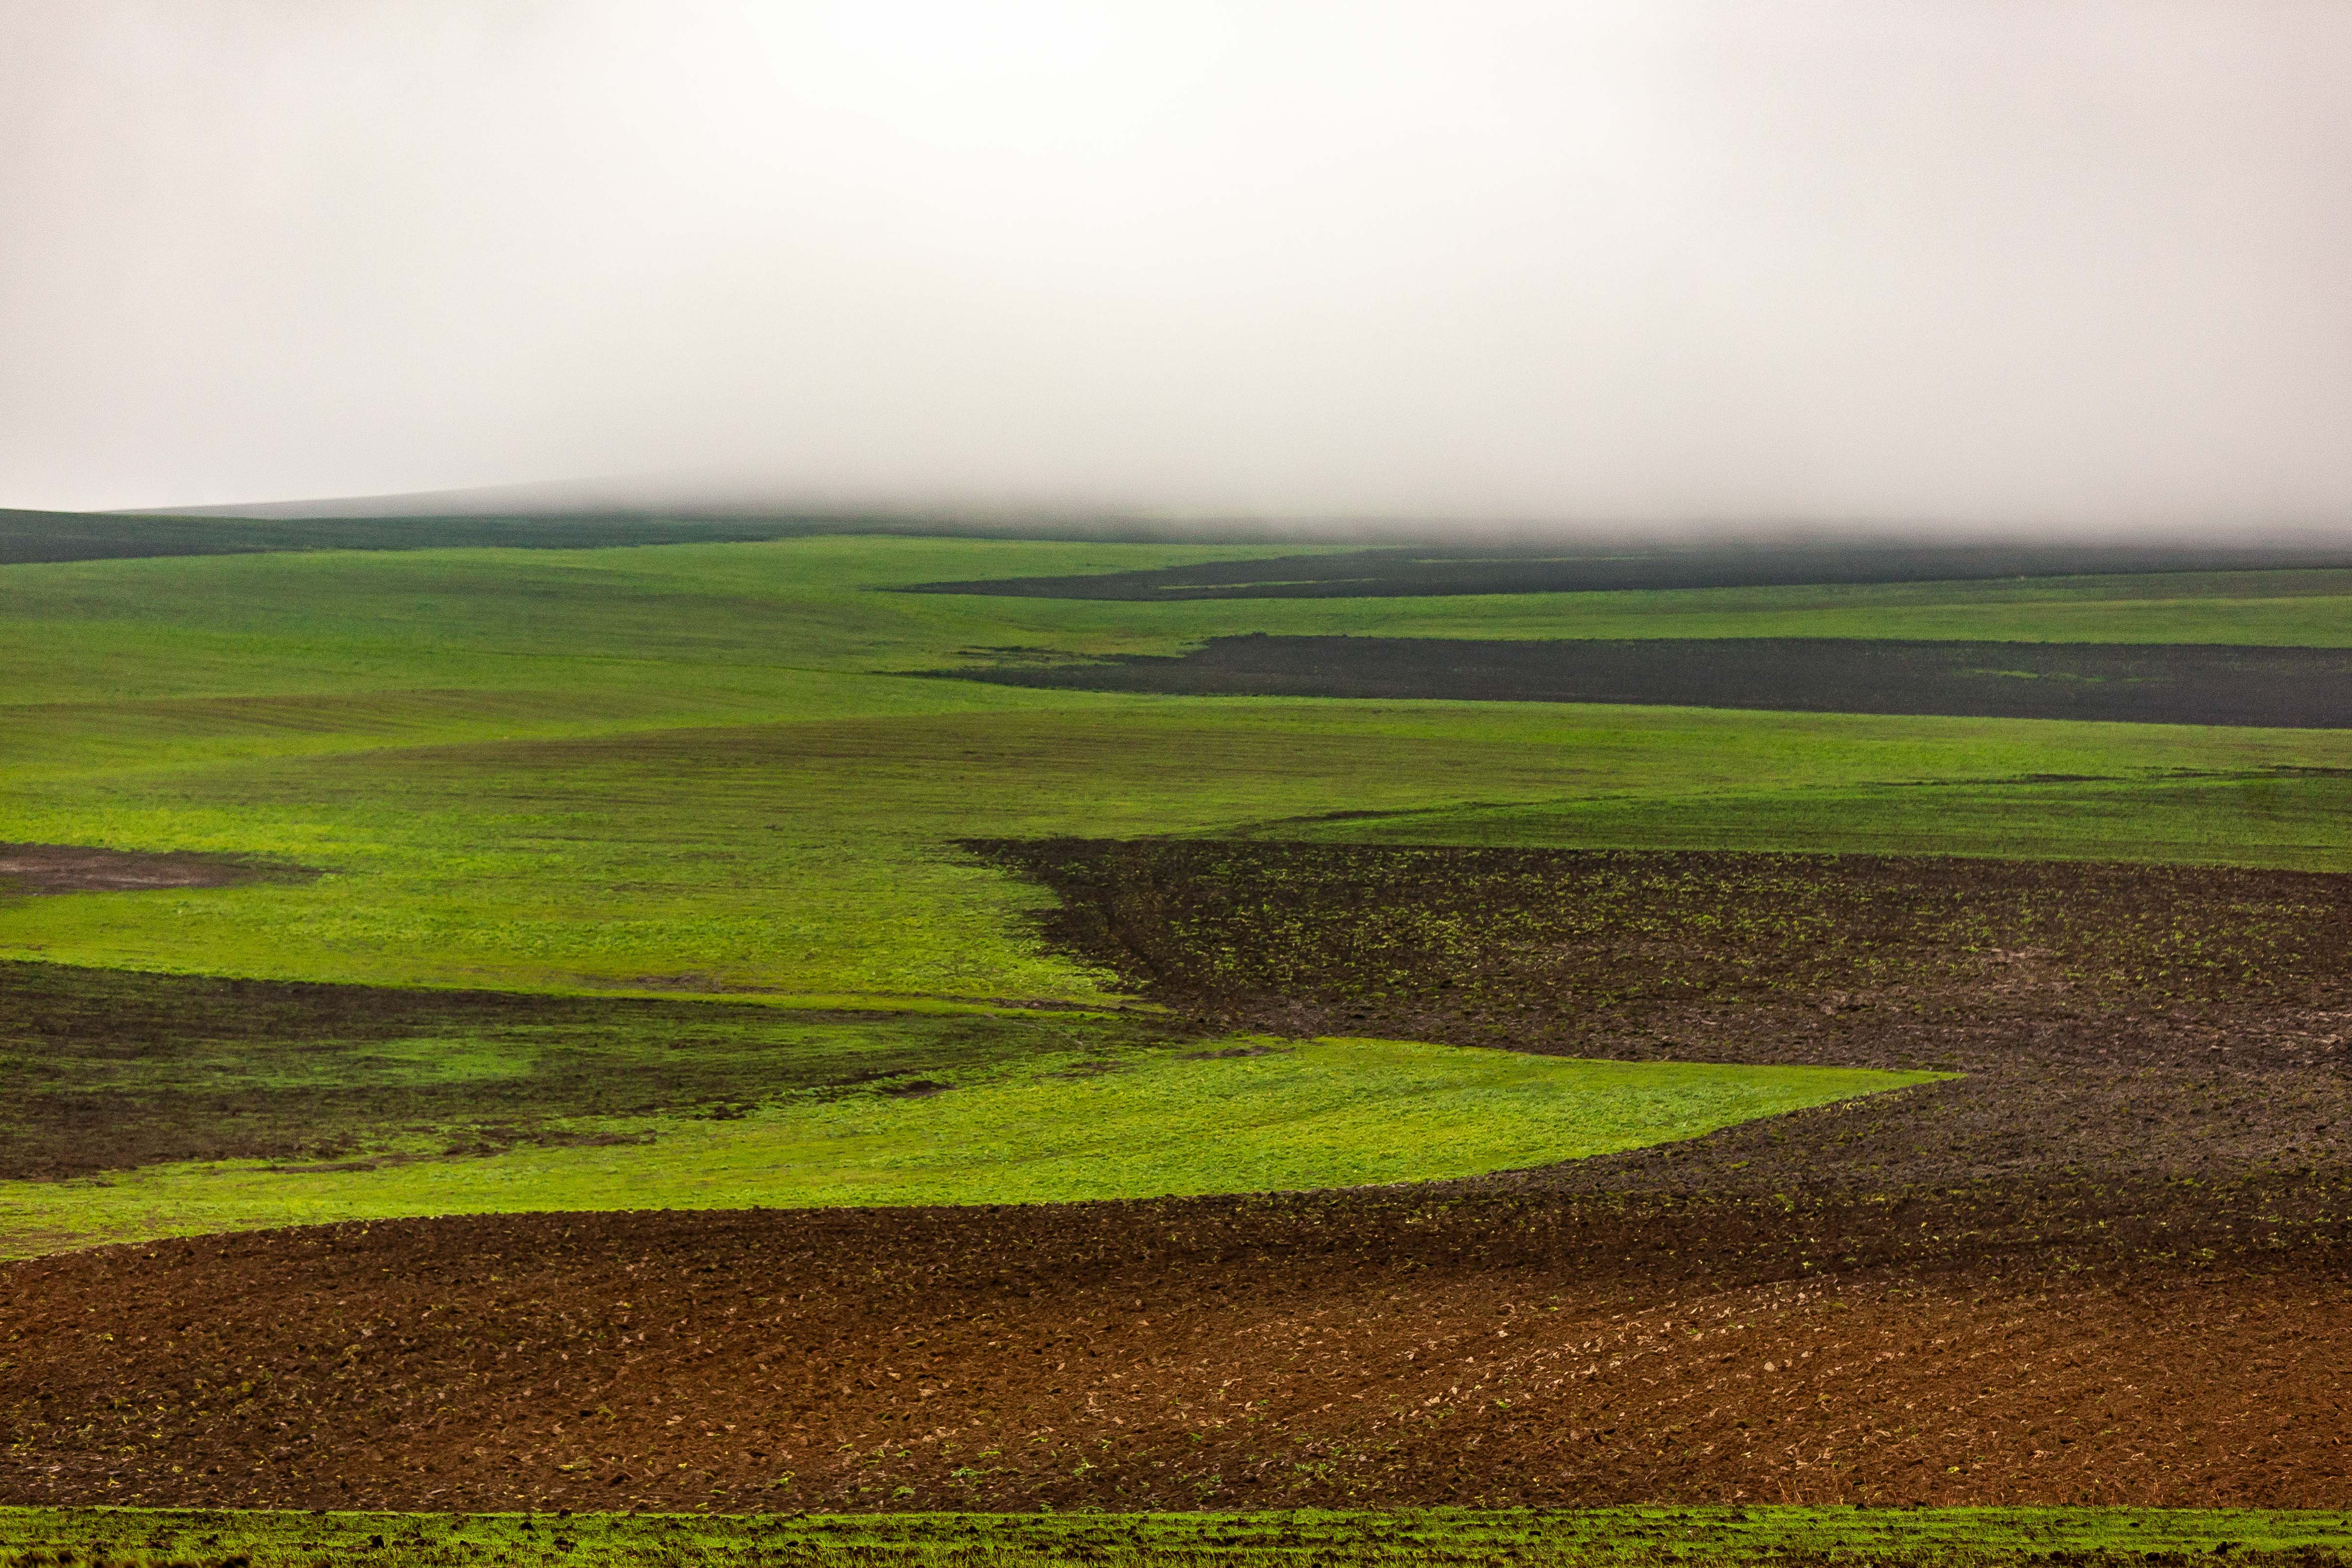 Azerbaijan, Oguz Prov, Fields, 2009, IMG 8475